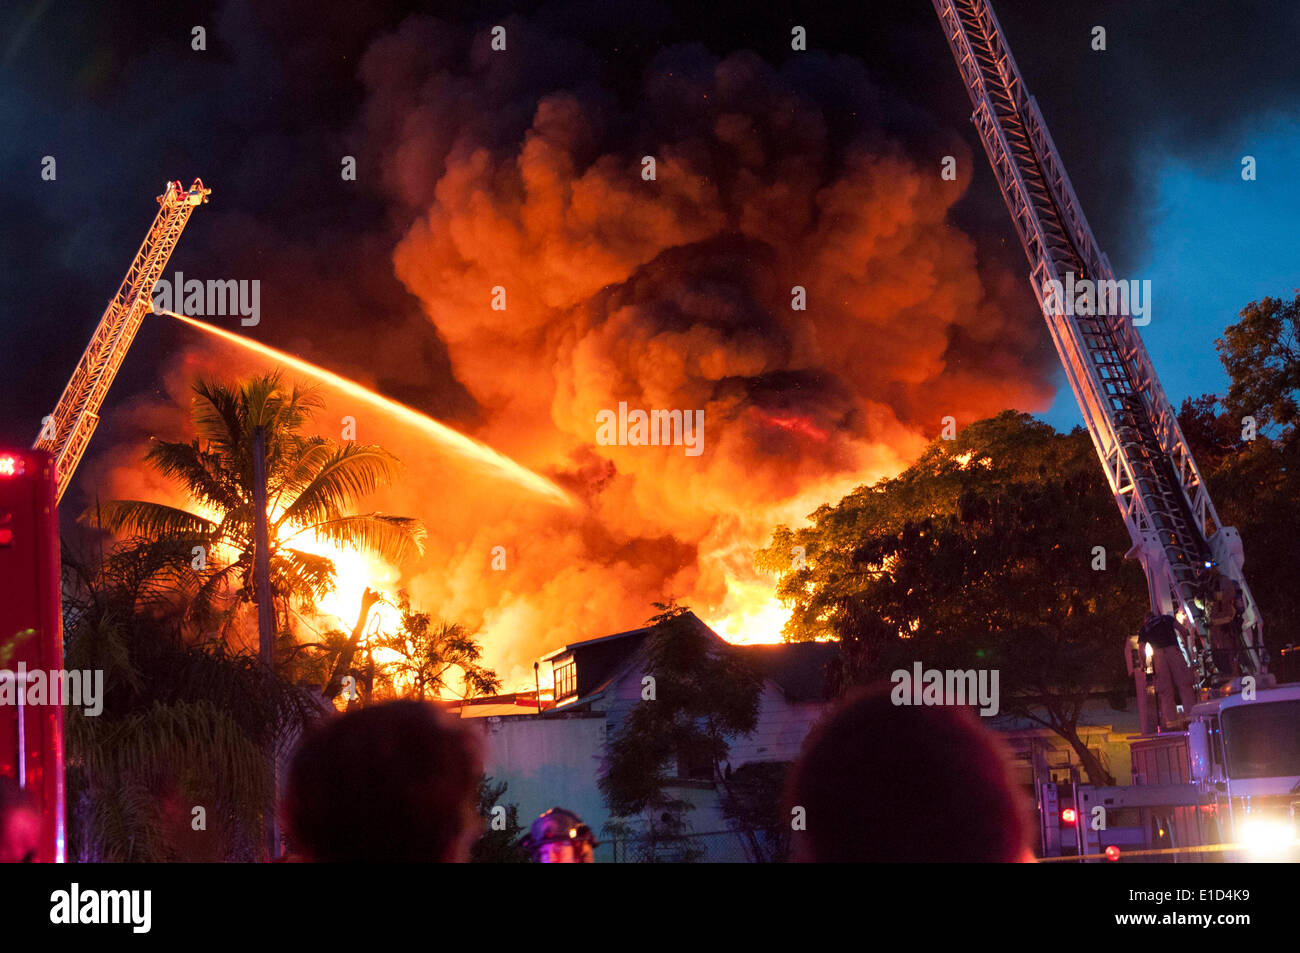 Mayo 30, 2014 - Miami, Florida, EE.UU. - bomberos luchar contra un incendio en su casa en el NW 14 Terrace. (Crédito de la Imagen: © Maria Izaurralde/ZUMA Press) Foto de stock